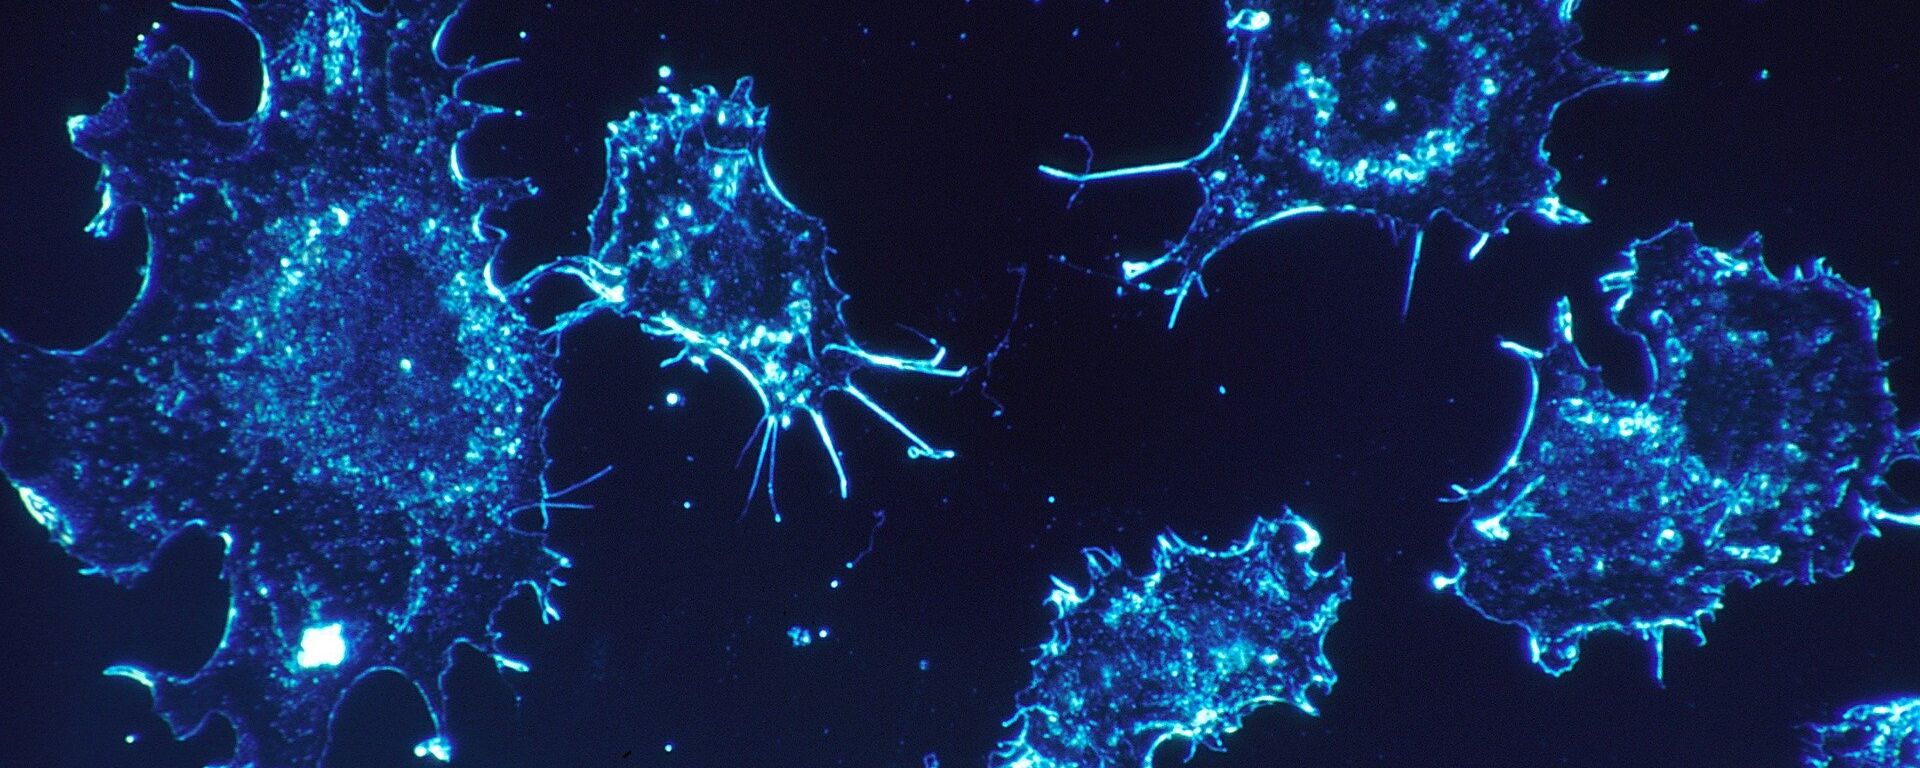 Cancer cells  - Sputnik International, 1920, 08.10.2020